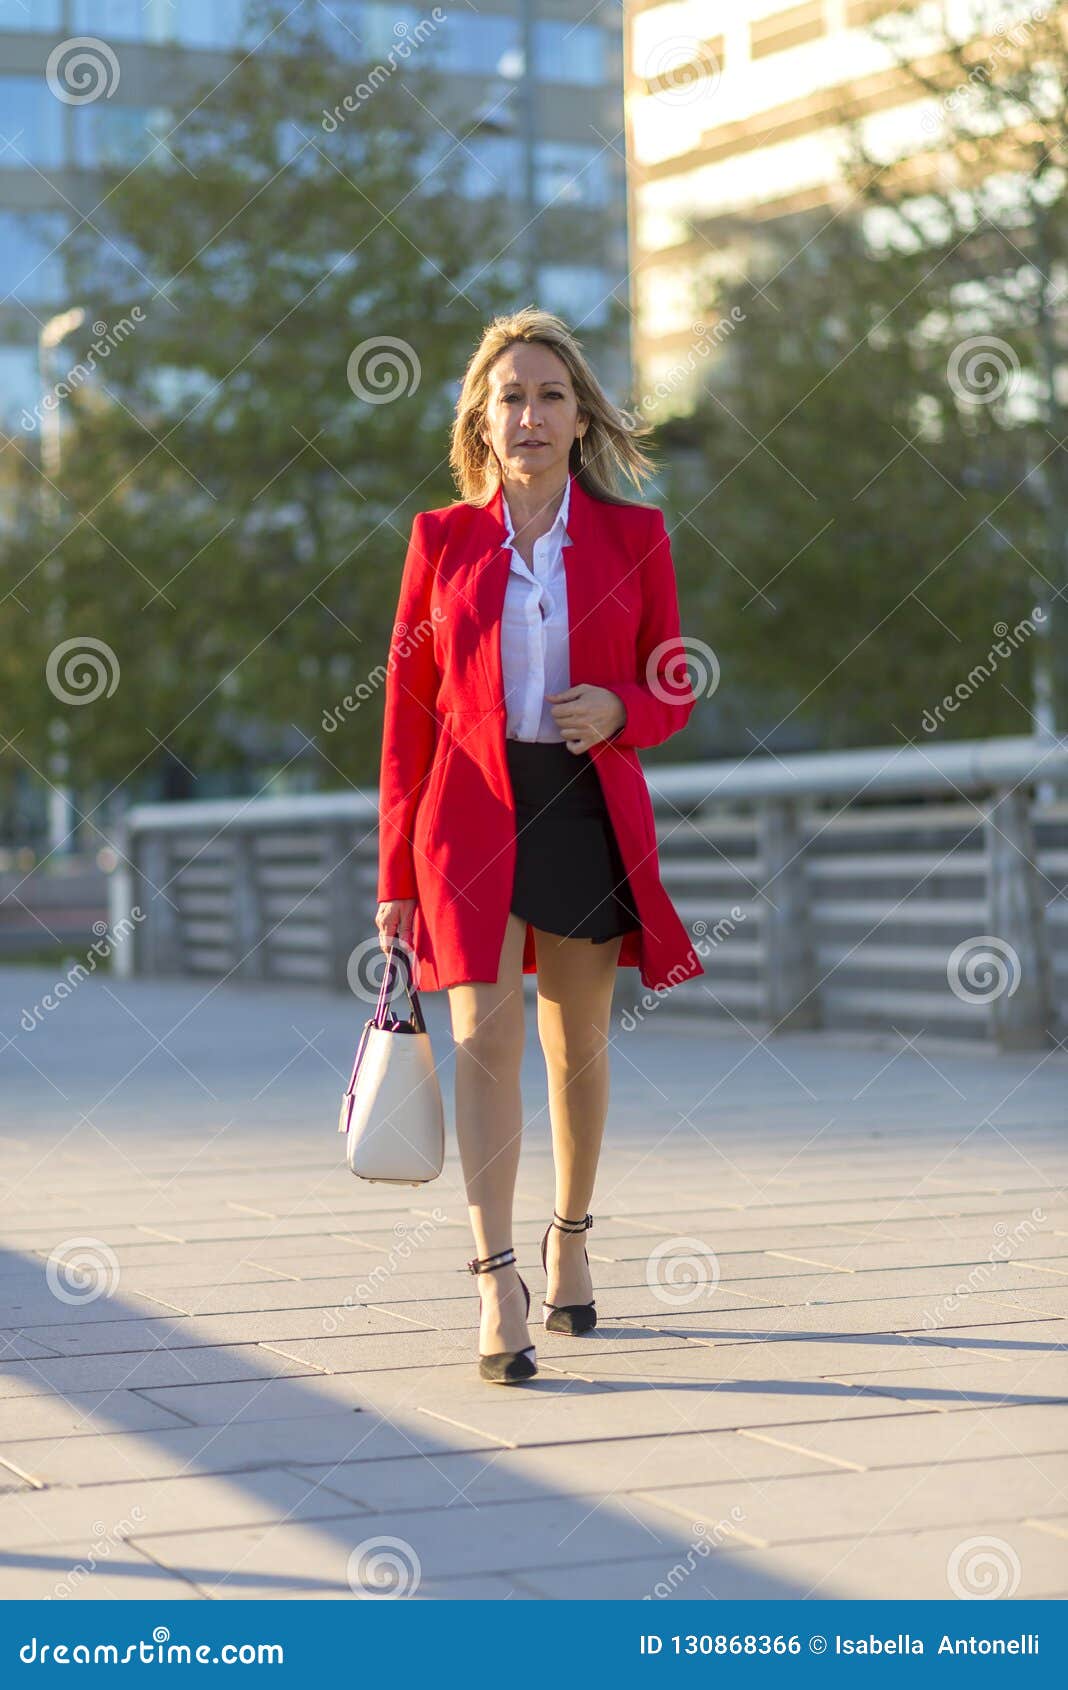 Secreto usted está Ingenioso Mujer Rubia Que Lleva La Chaqueta Roja Y El Bolso Blanco Que Caminan En  Foto de archivo - Imagen de edificios, rojo: 130868366